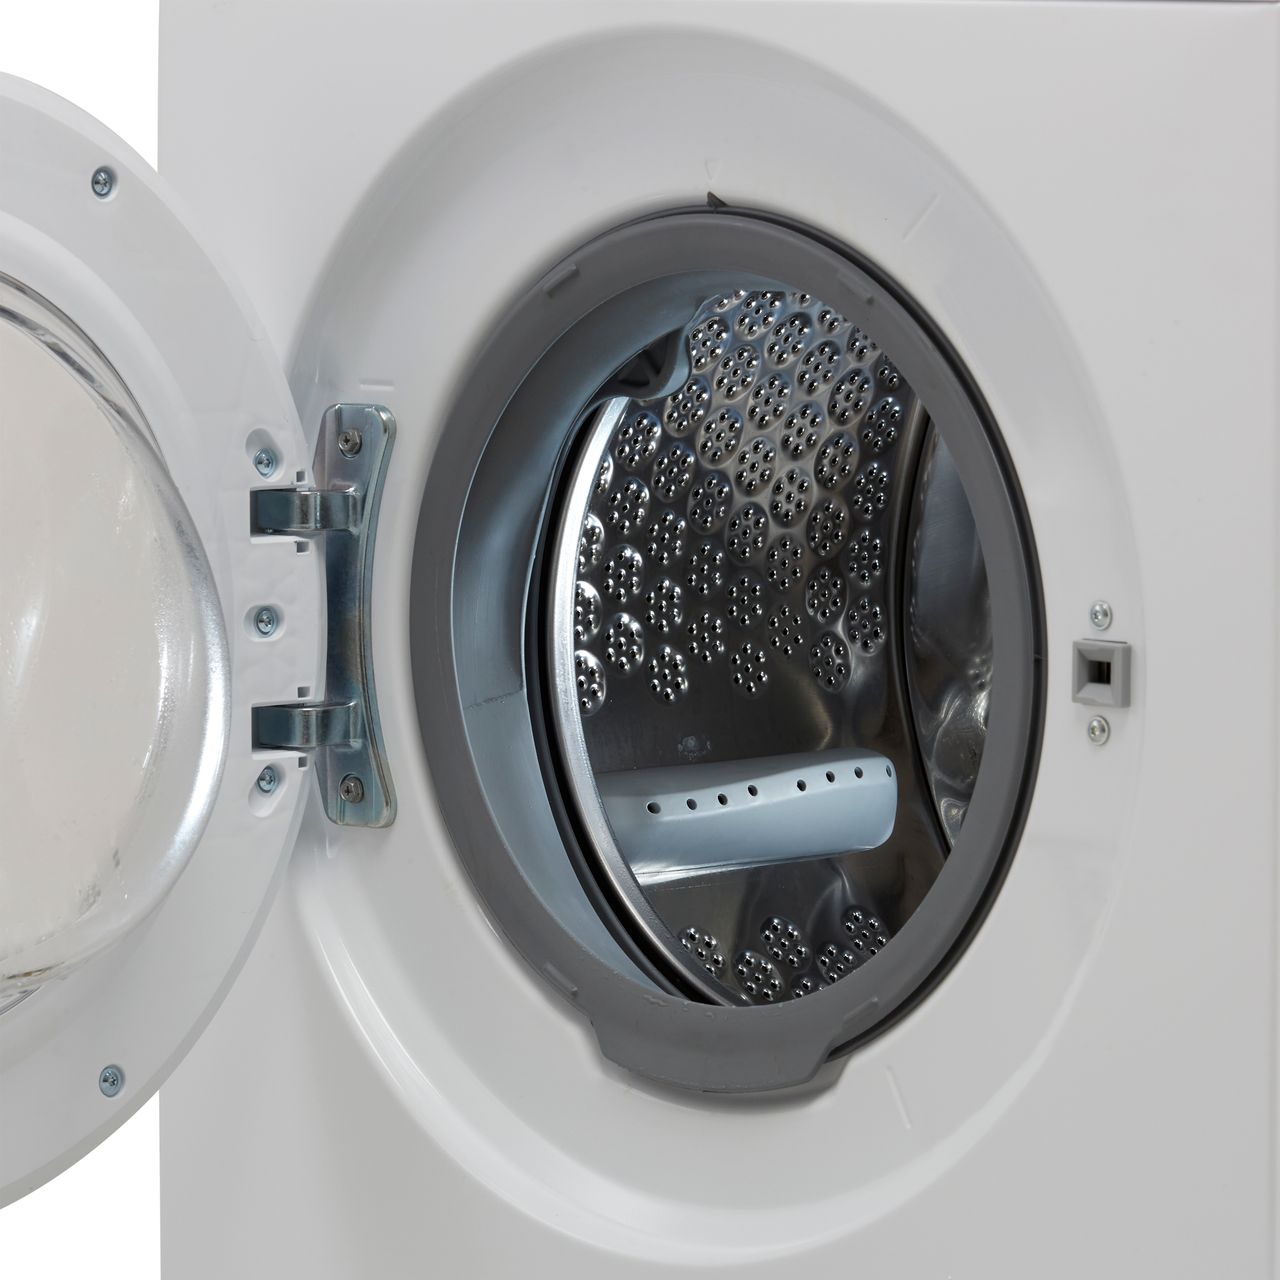 ZWD86NB4PW | Zanussi Washer Dryer | 8kg | ao.com